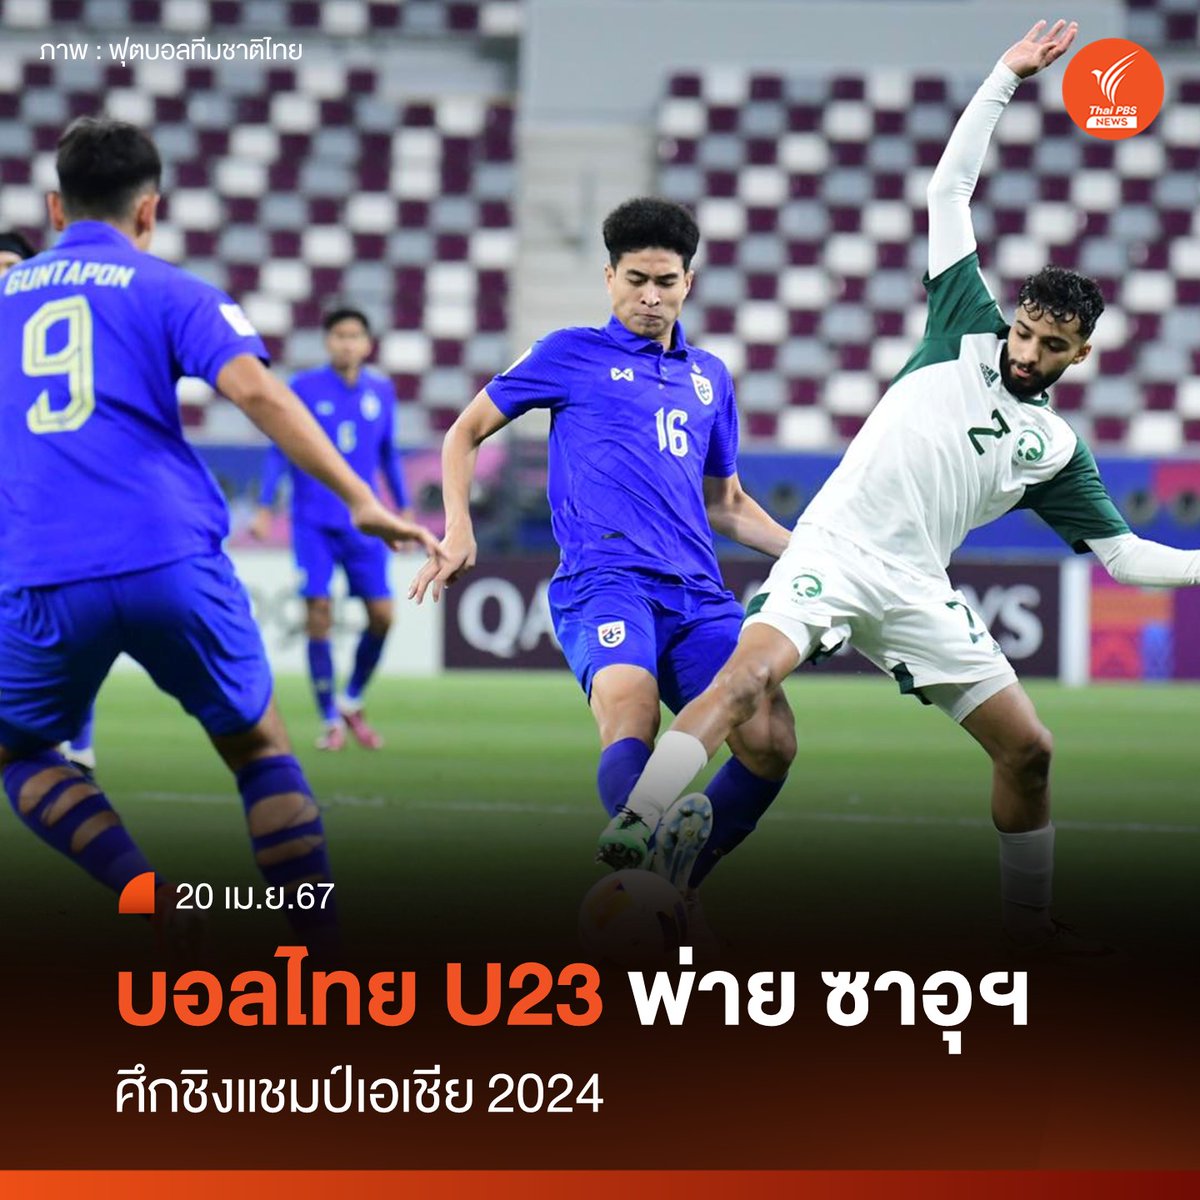 ทีมชาติไทย U23 พ่าย ทีมชาติซาอุดีอาระเบีย 0-5 ในศึกฟุตบอลชิงแชมป์เอเชีย 2024 มี 3 คะแนนเท่าเดิม ต้องลุ้นเข้ารอบ 8 ทีม ในนัดสุดท้าย โดยพบกับ ทาจิกิสถาน 22 เม.ย.นี้
อ่านข่าวเพิ่ม : thaipbs.or.th/news/content/3…
#บอลไทย #ฟุตบอลไทย #ทีมชาติไทย #ช้างศึกU23 #ทีมชาติไทยU23